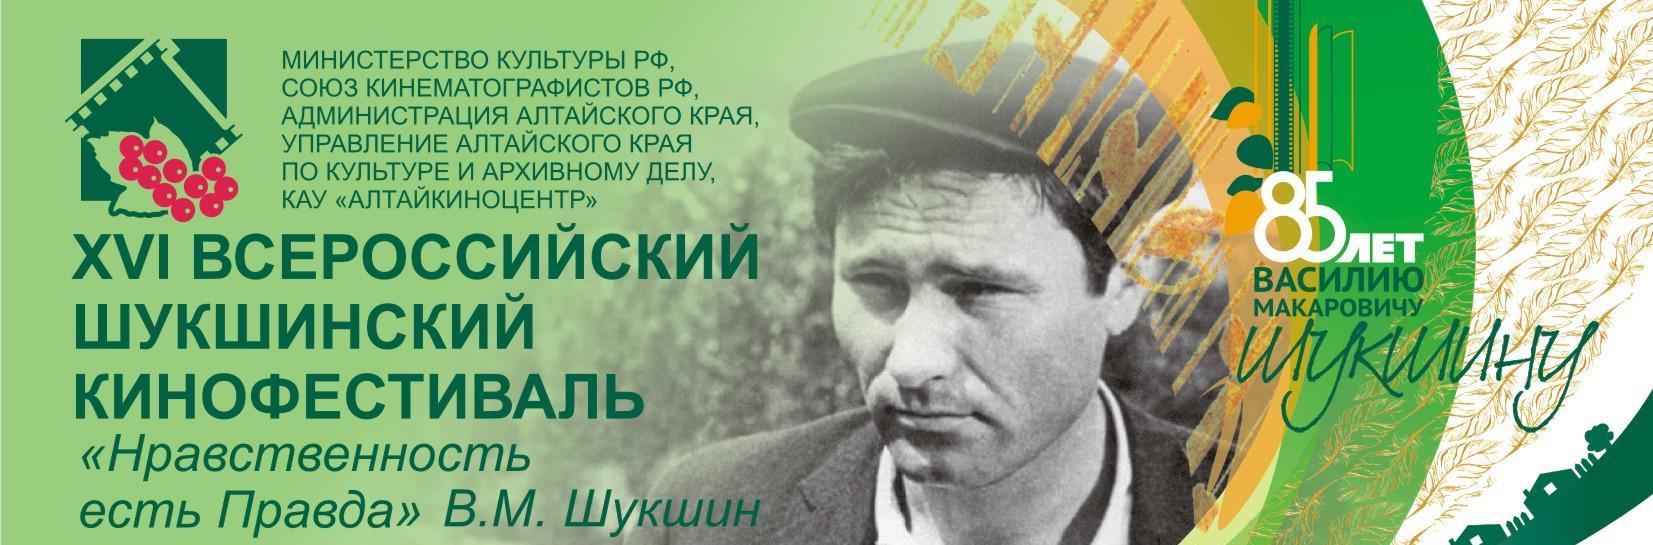 На Алтае открылся XVI Всероссийский Шукшинский кинофестиваль «Нравственность есть правда»